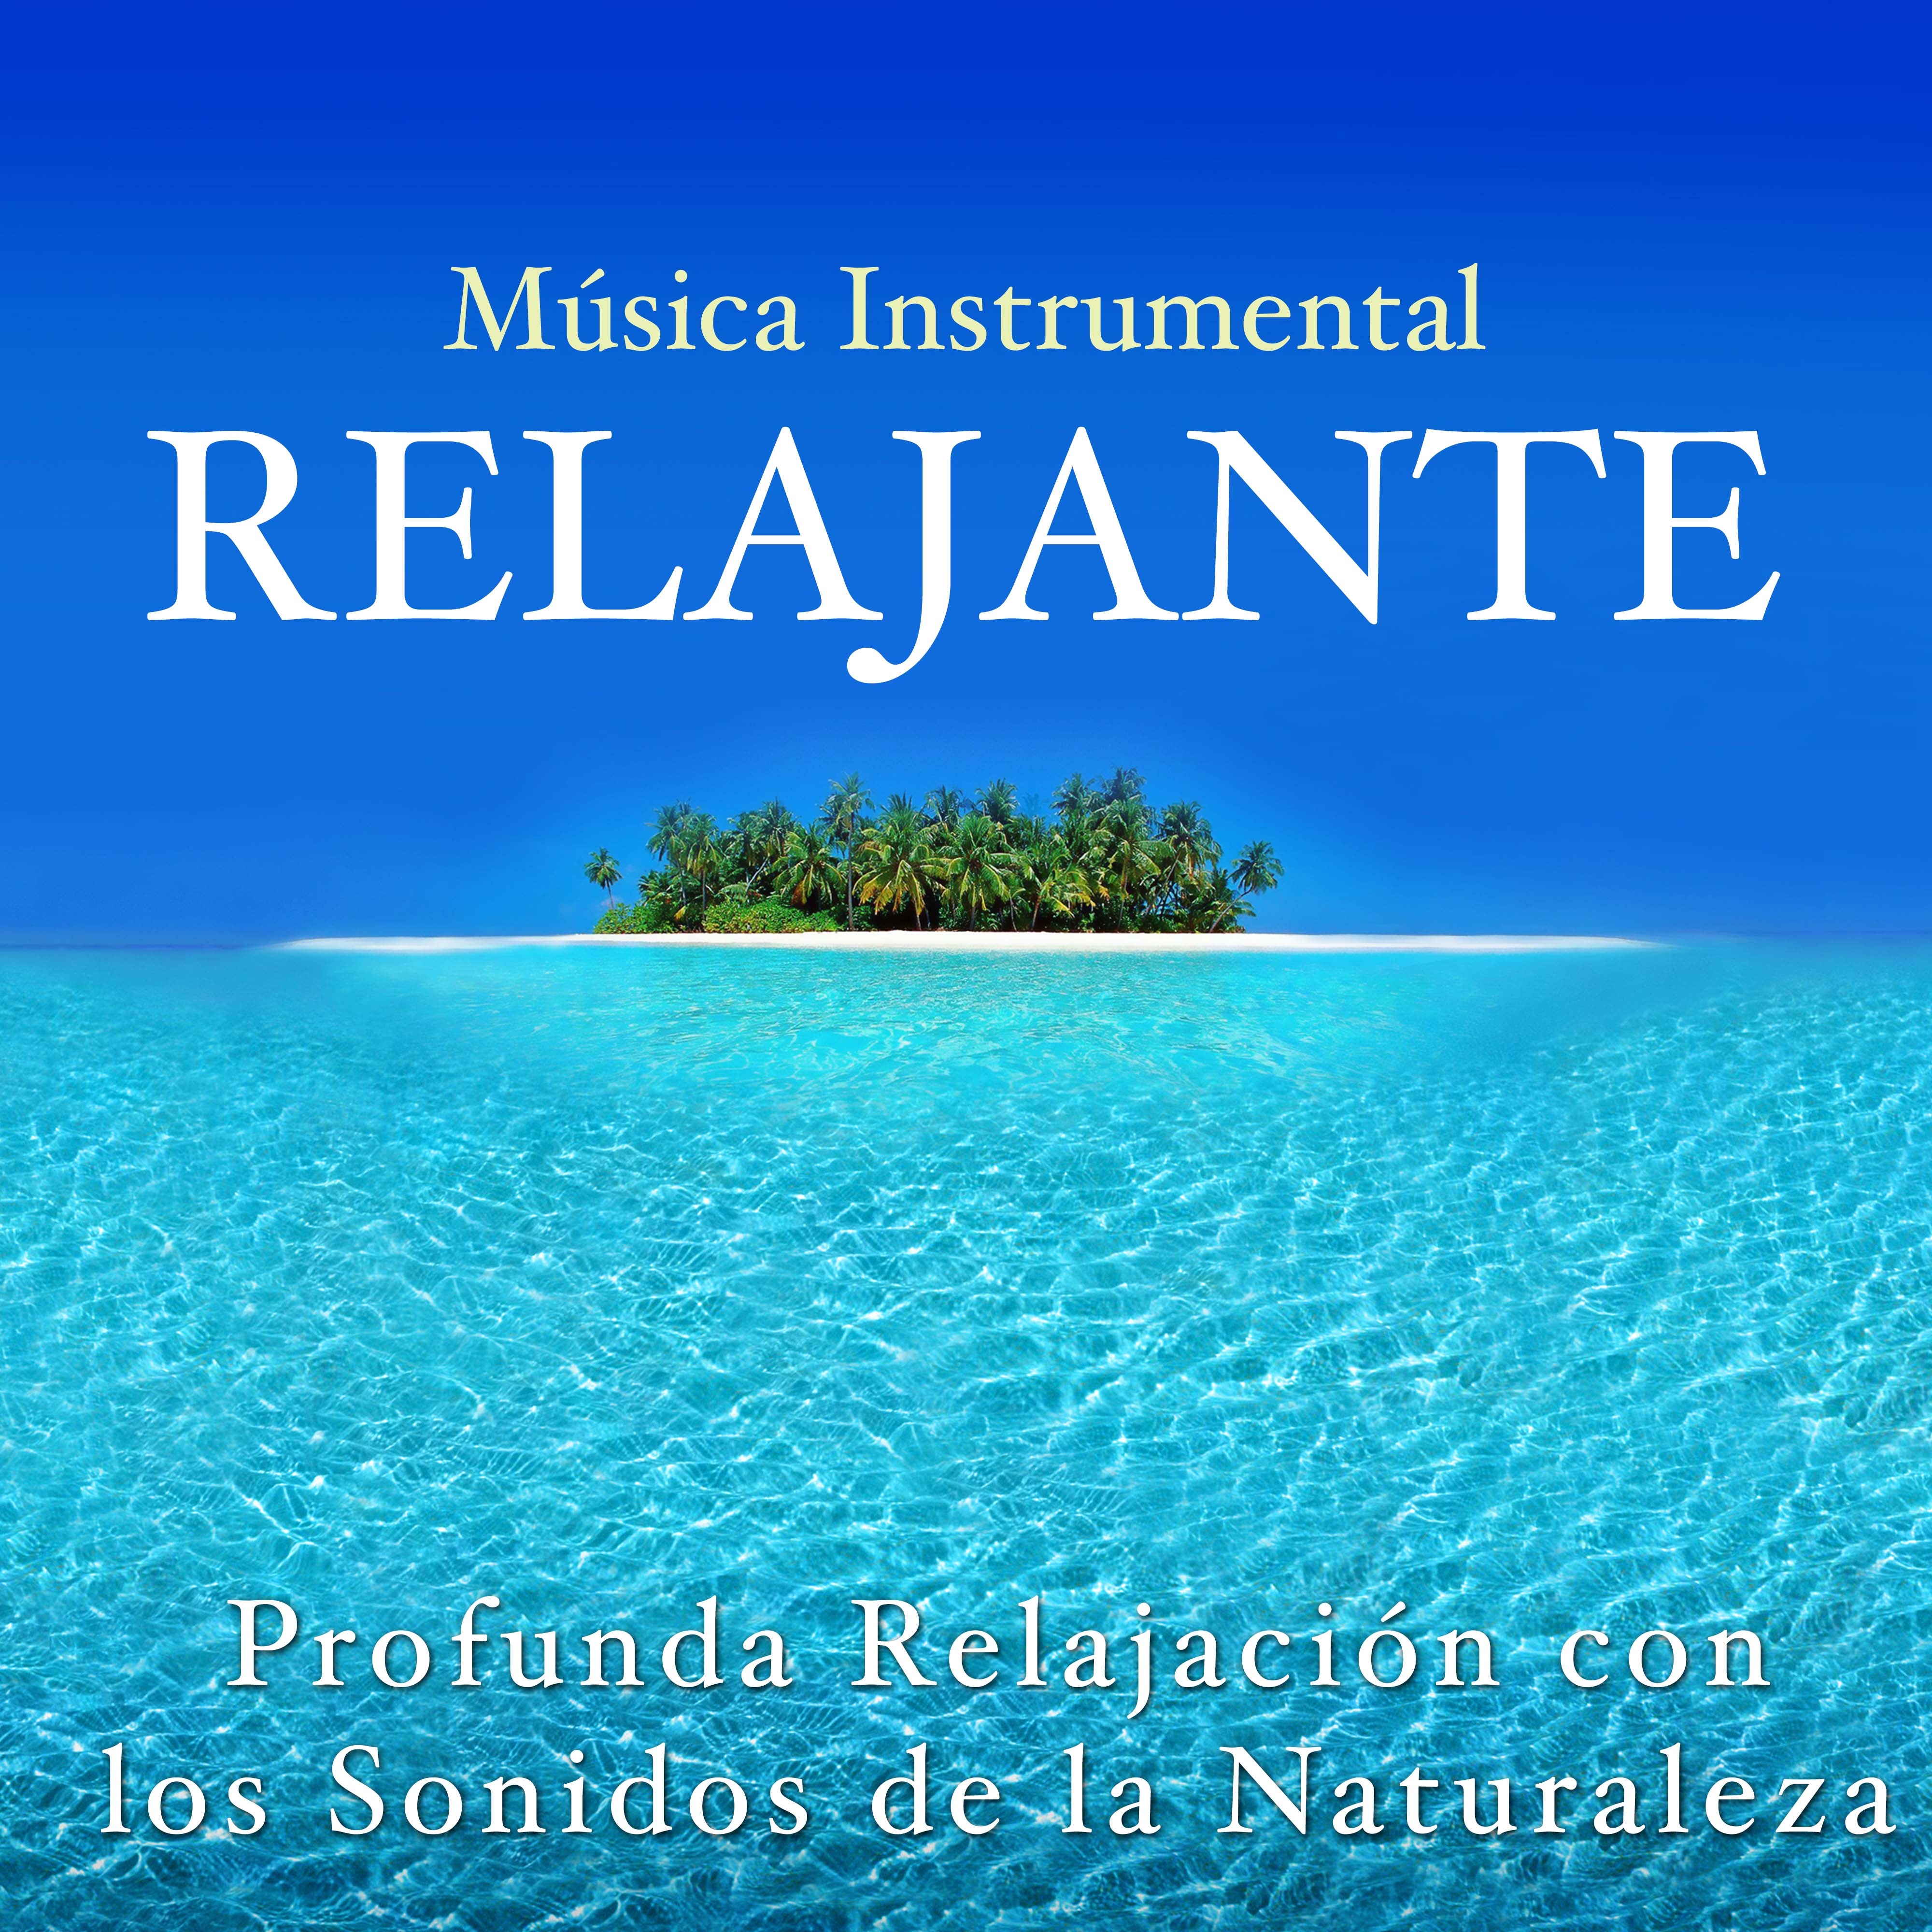 Musica Instrumental Relajante - Profunda Relajación con los Sonidos de la Naturaleza